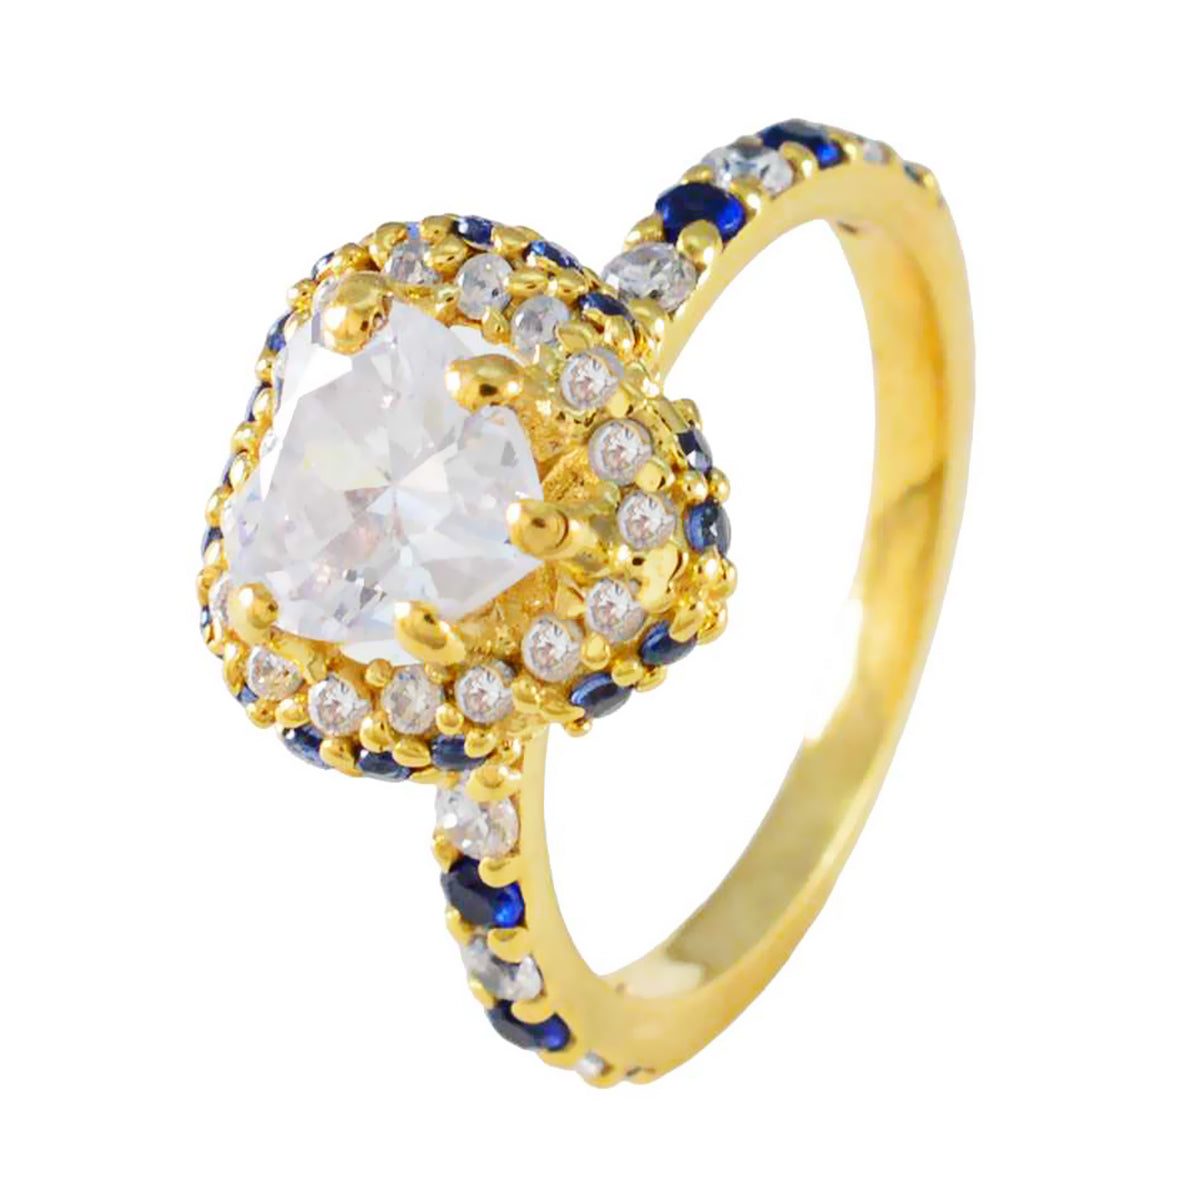 riyo mogen silverring med gul guldplätering blå safir cz sten hjärta form uttagsinställning handamde smycken jubileumsring